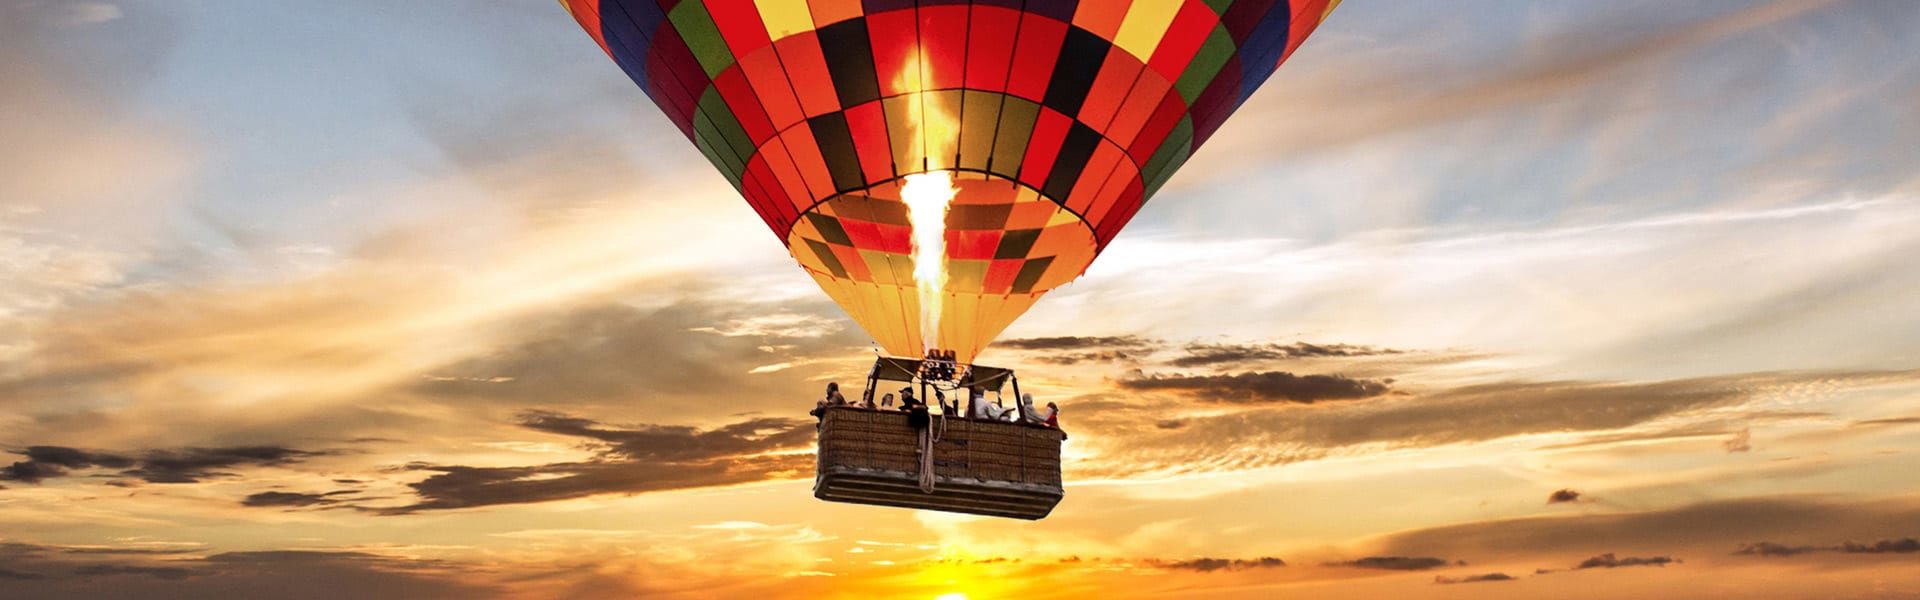 4 Days Hot Air Balloon Safari